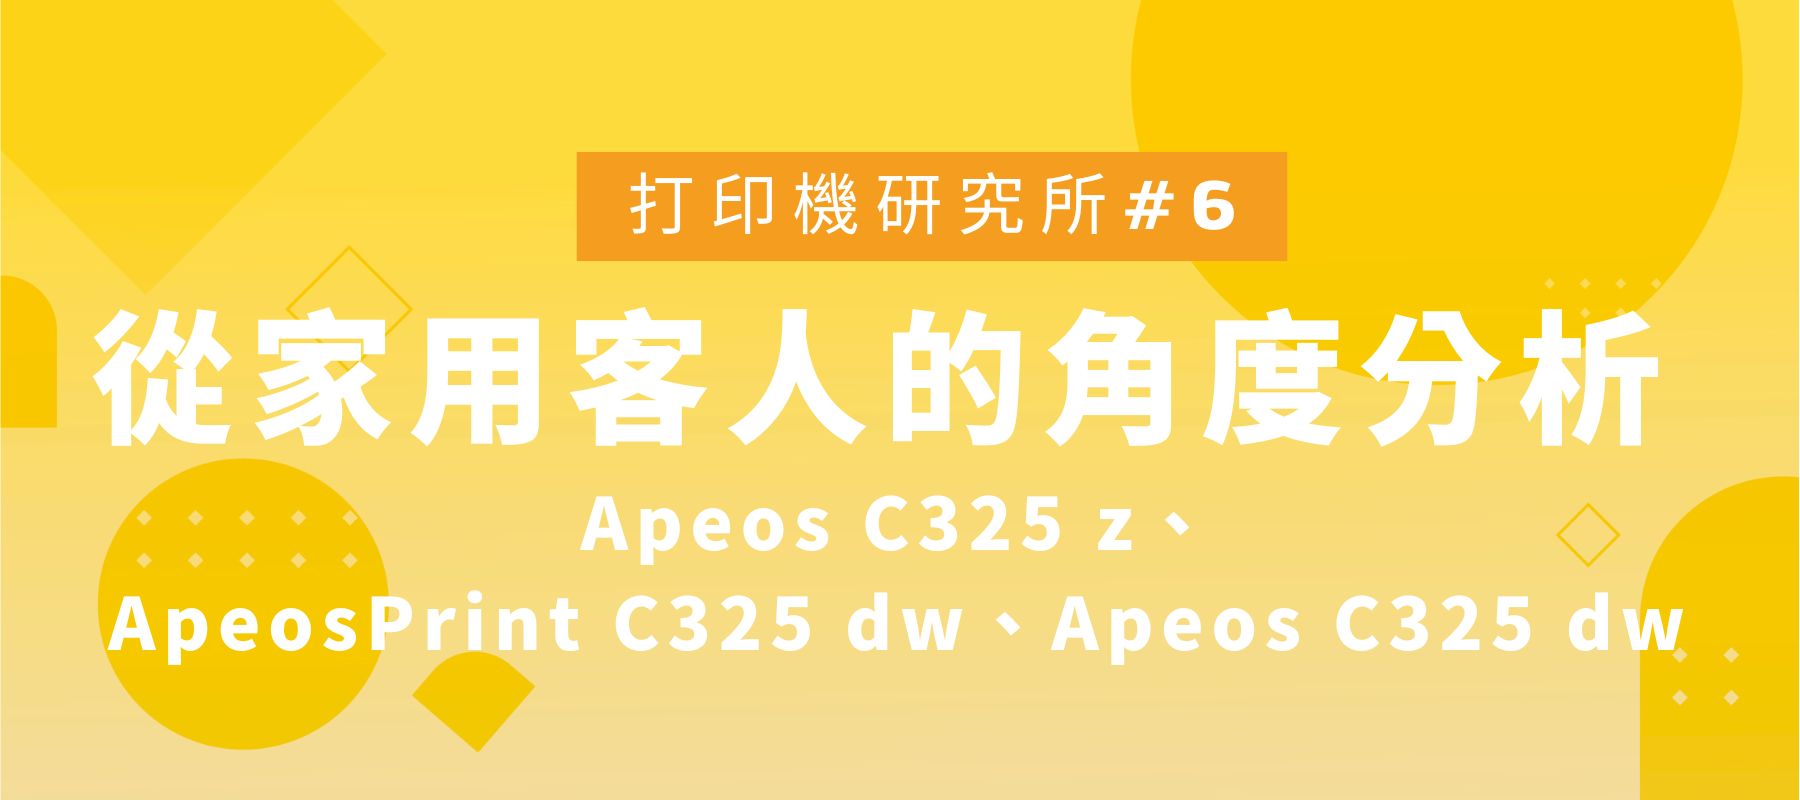 如何選擇最適合的打印機? 從家用客人的角度分析 Apeos C325 z、ApeosPrint C325 dw、Apeos C325 dw